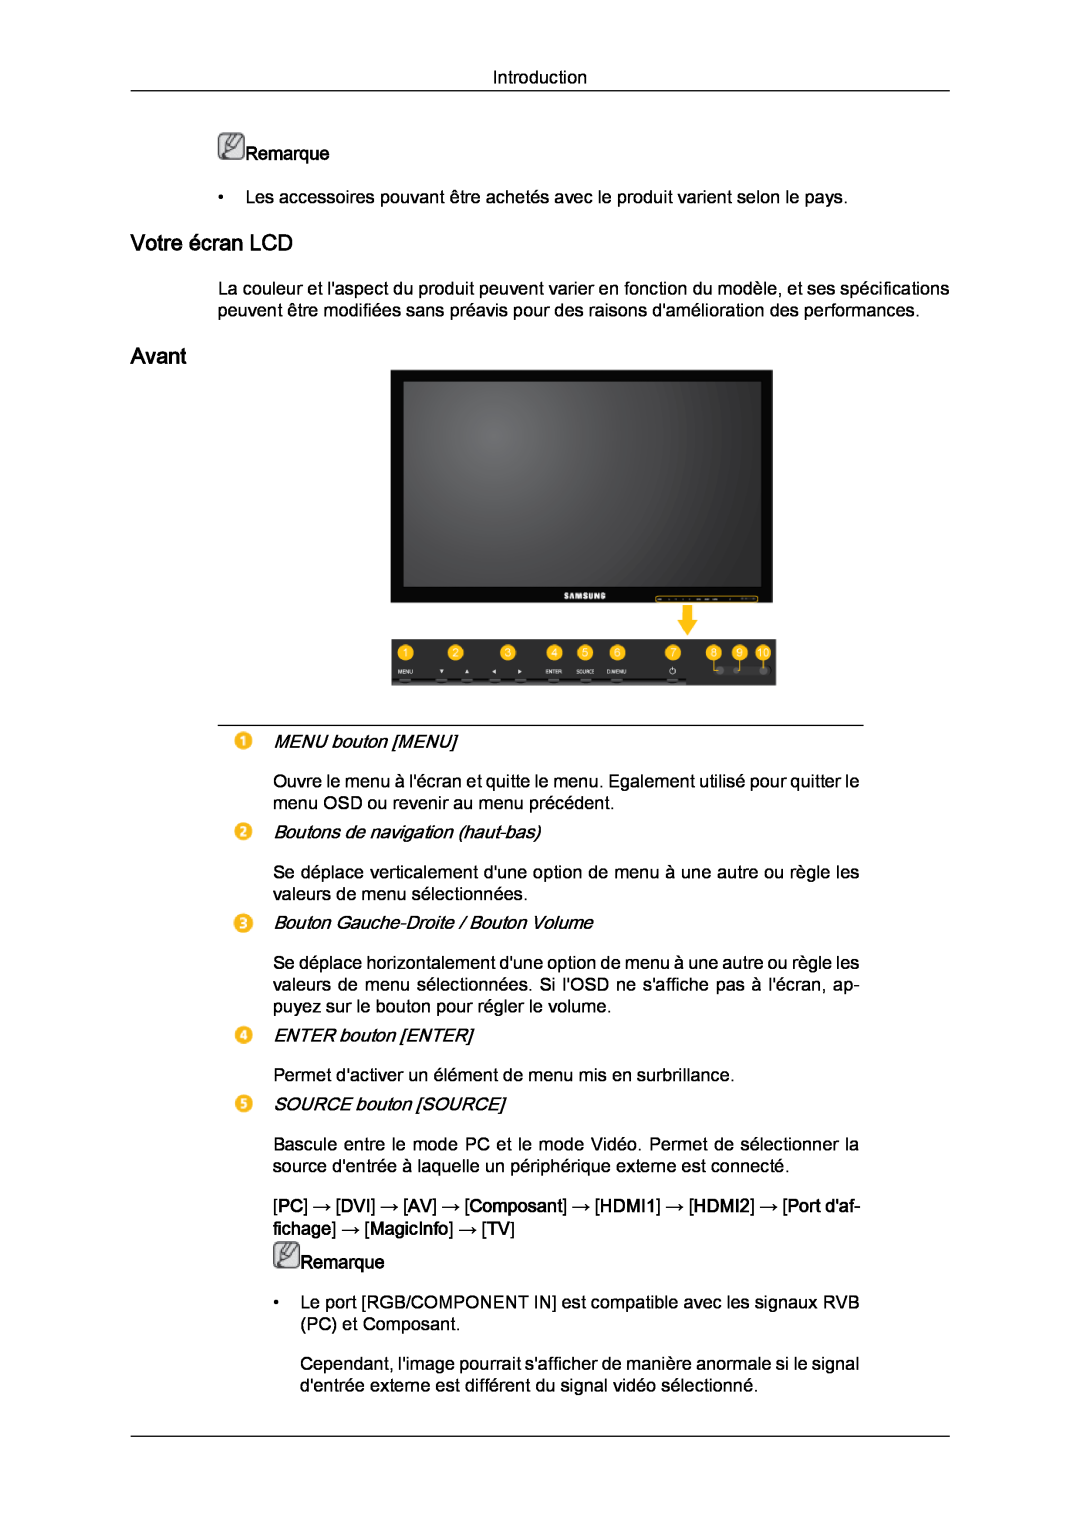 Samsung LH46CRPMBD/EN manual Votre écran LCD, Avant, MENU bouton MENU, Boutons de navigation haut-bas, ENTER bouton ENTER 